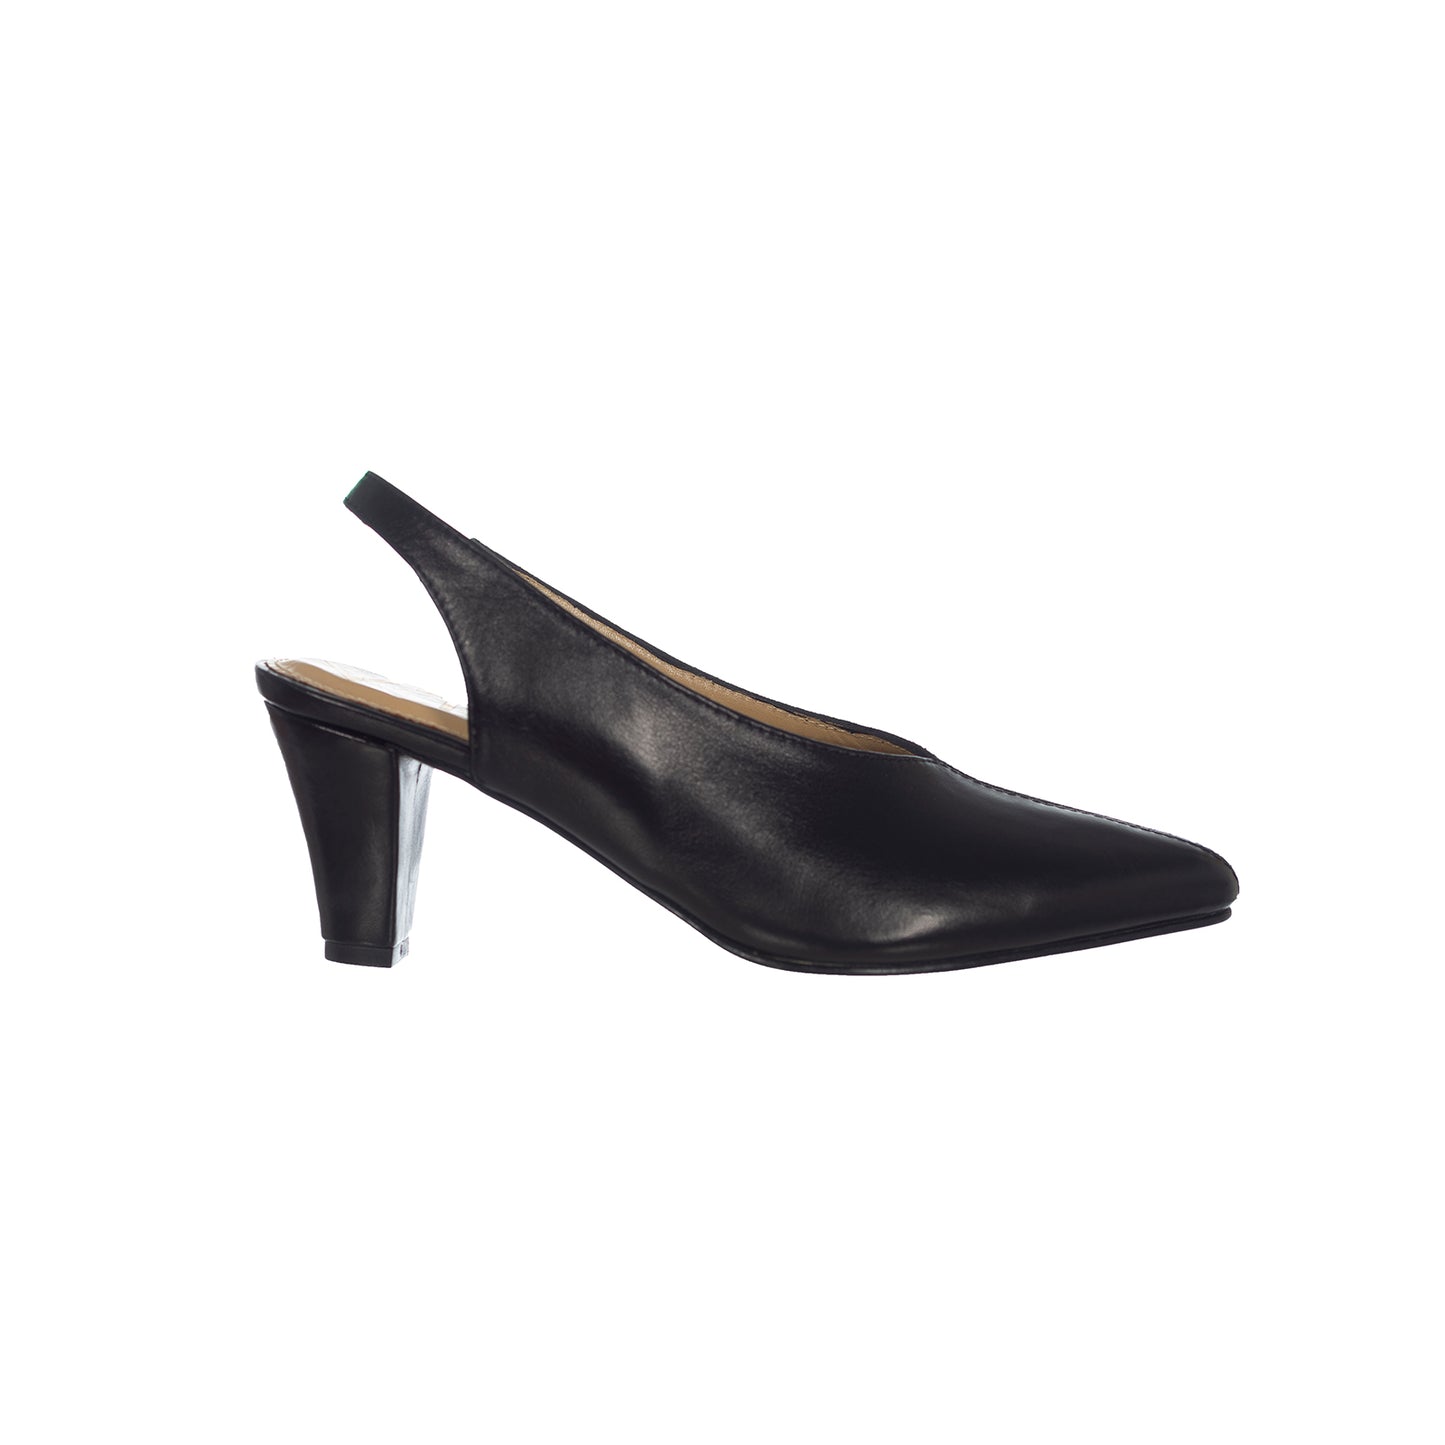 Comet heels - Size 38